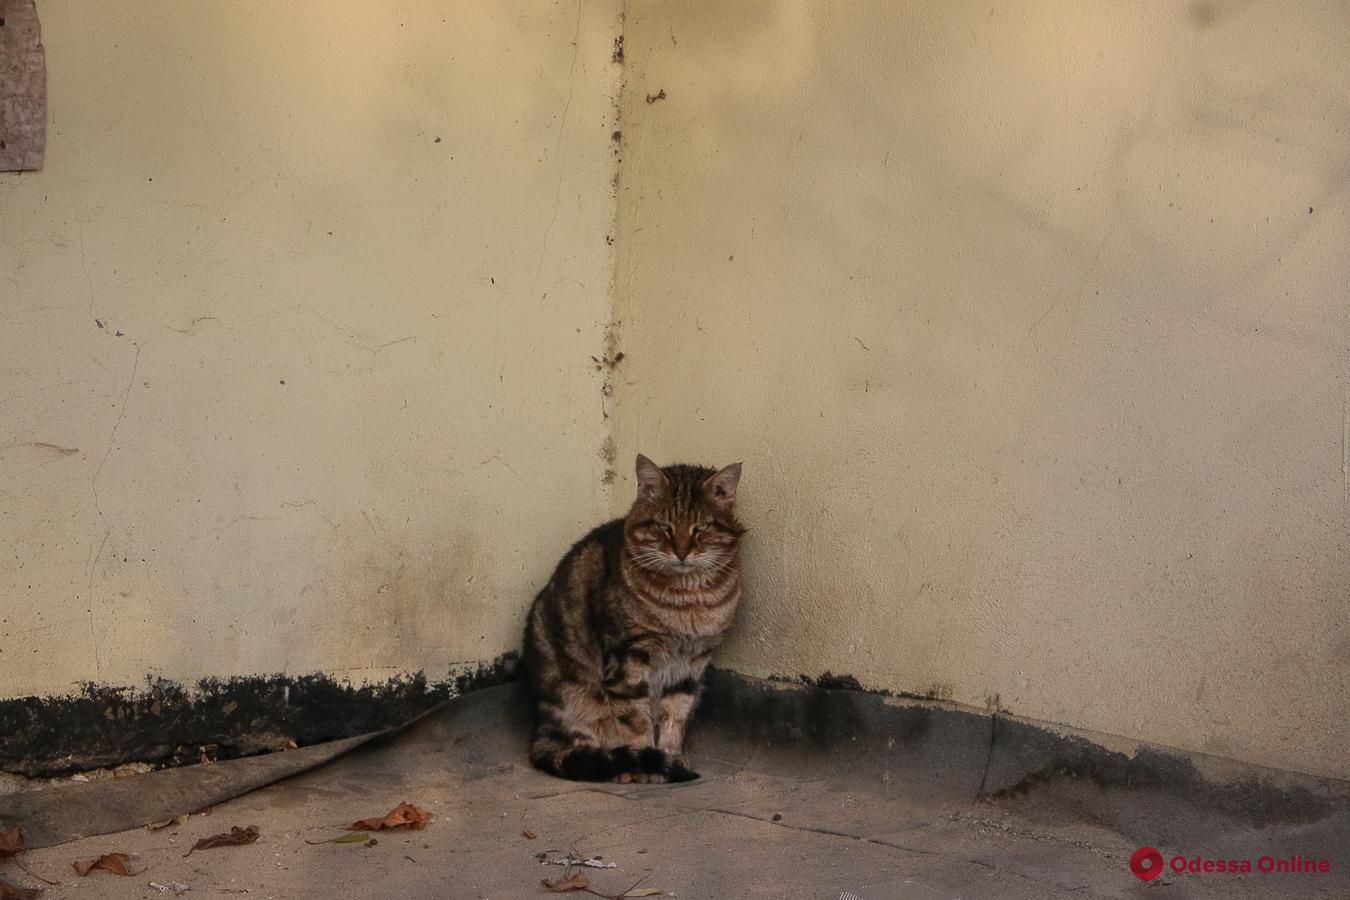 Мягкие, пушистые и произведения искусства: фотоподборка одесских мурлык ко Дню кота